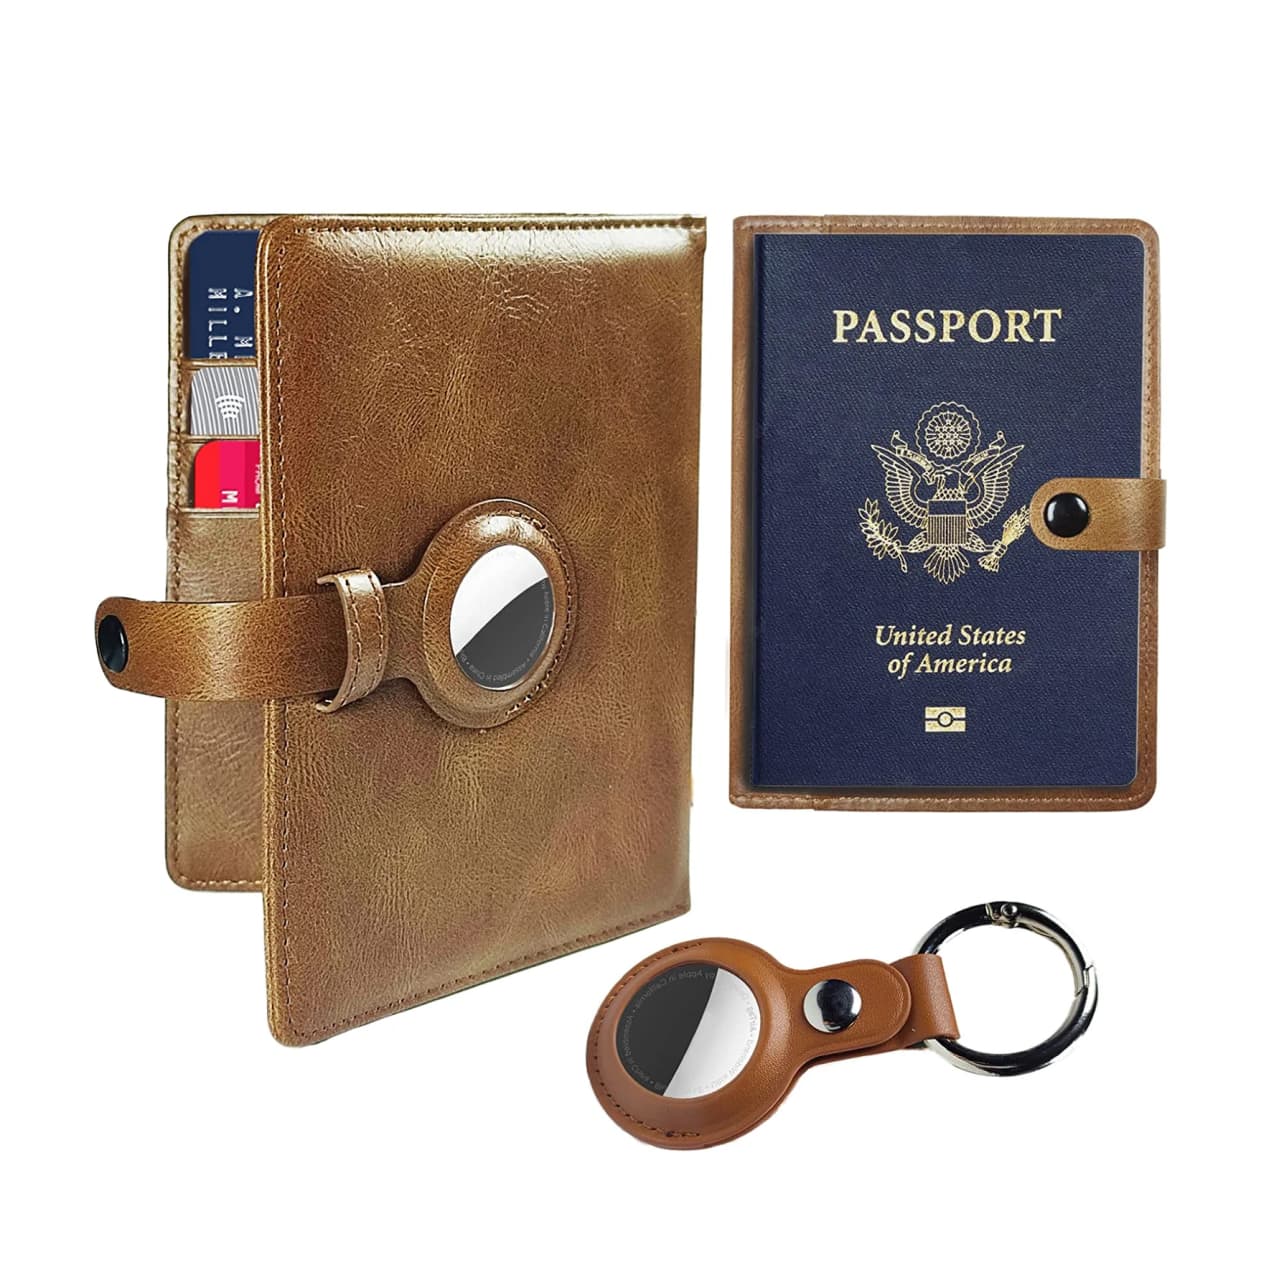 AirTag passport holder